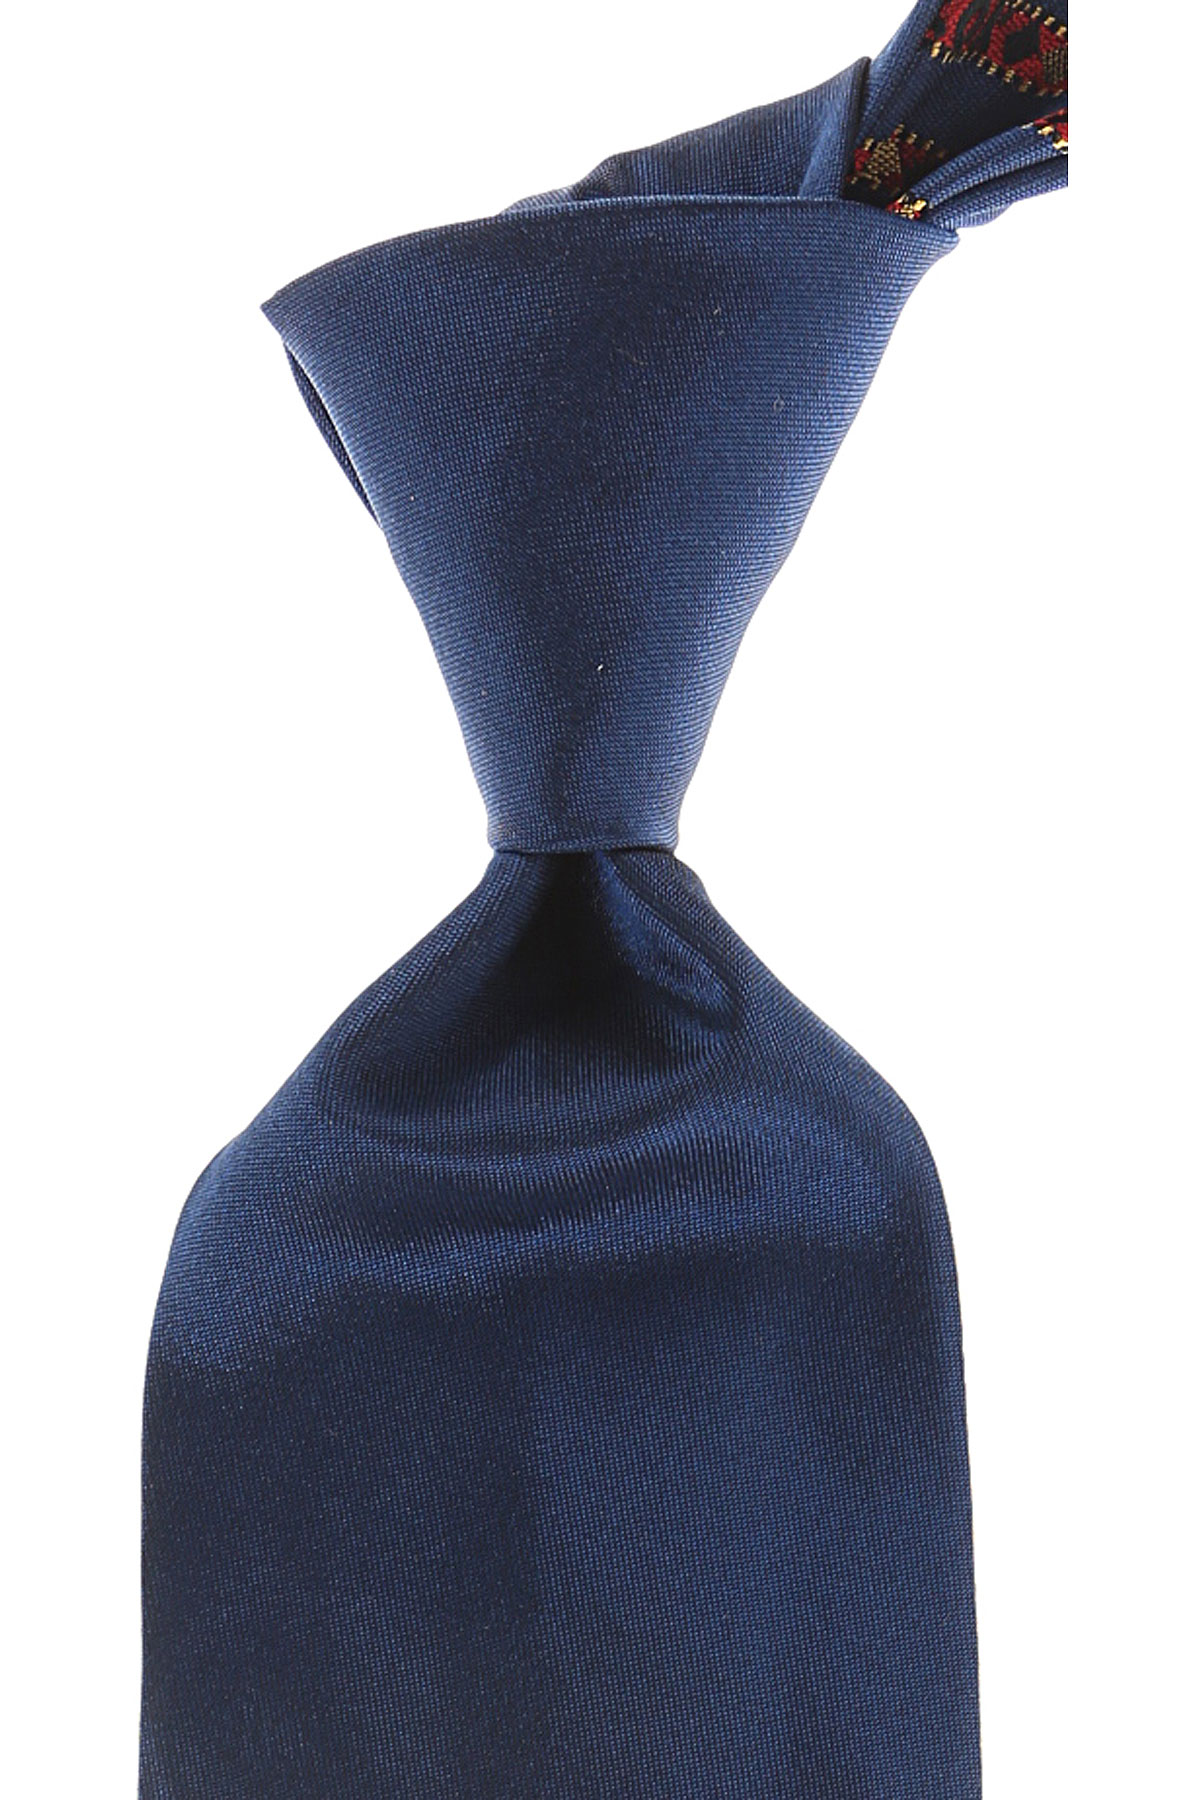 Cravates Vivienne Westwood , Bleu ciel foncé, Soie, 2017